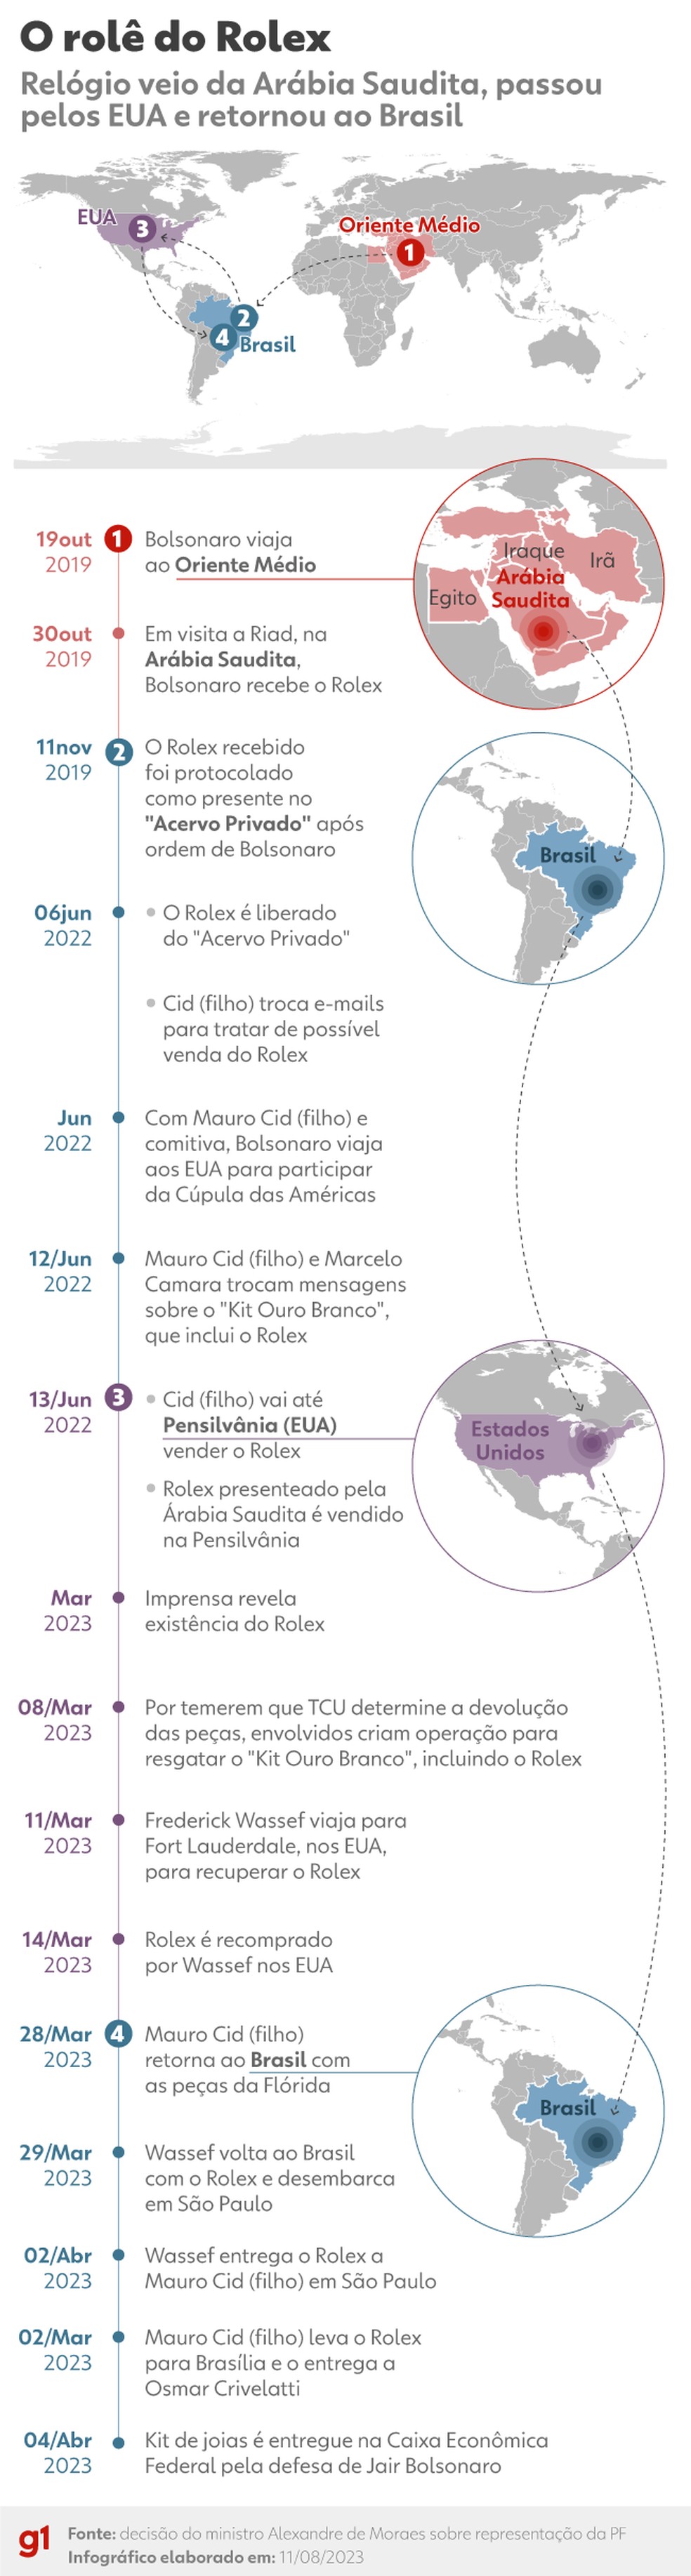 Cronologia da movimentação do Rolex desde o recebimento do presente, passando pela venda e recompra por aliados de Bolsonaro — Foto: Luisa Rivas e Kayan Albertin/Arte g1